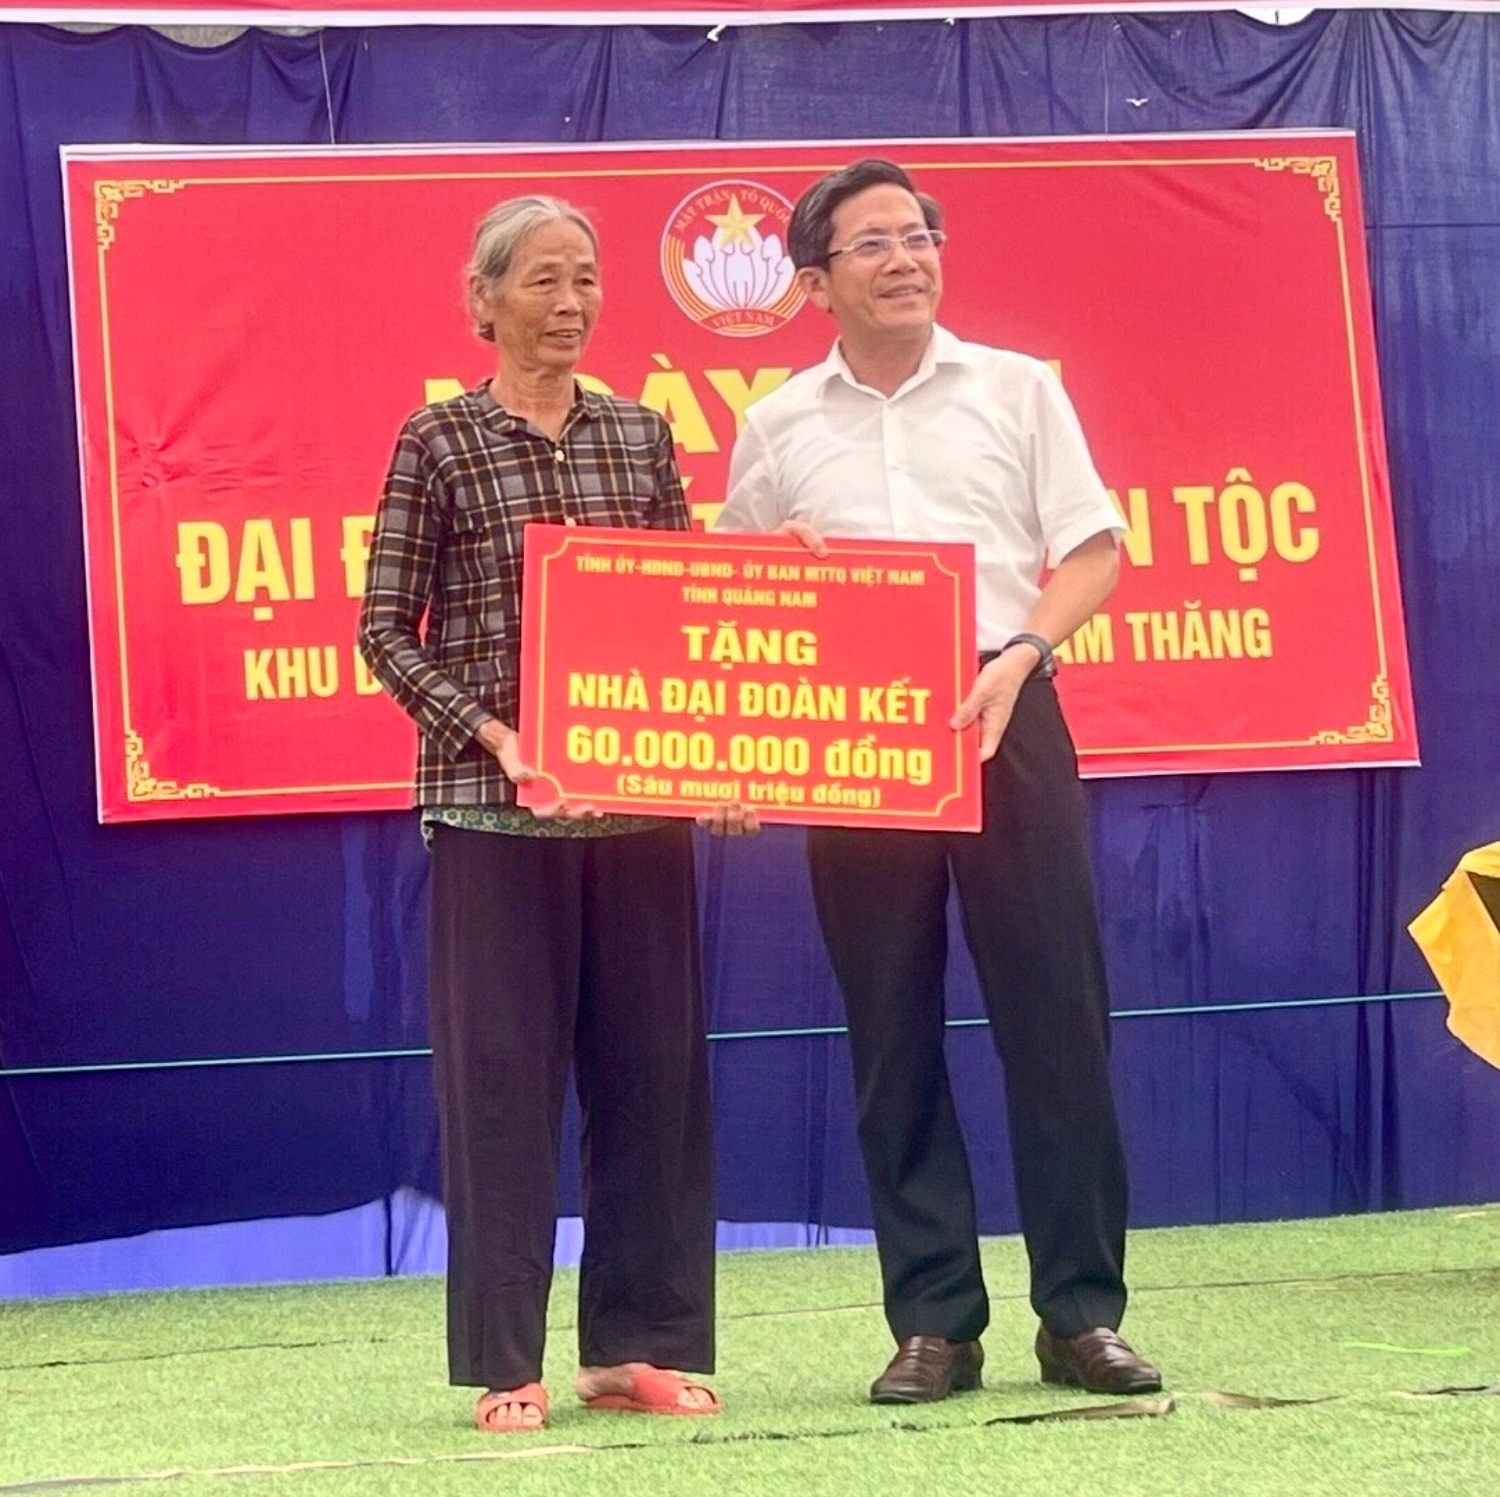 Bí thư Thành ủy Tam Kỳ Trần Nam Hưng trao hỗ trợ xây dựng nhà đại đoàn kết cho hộ nghèo của thôn